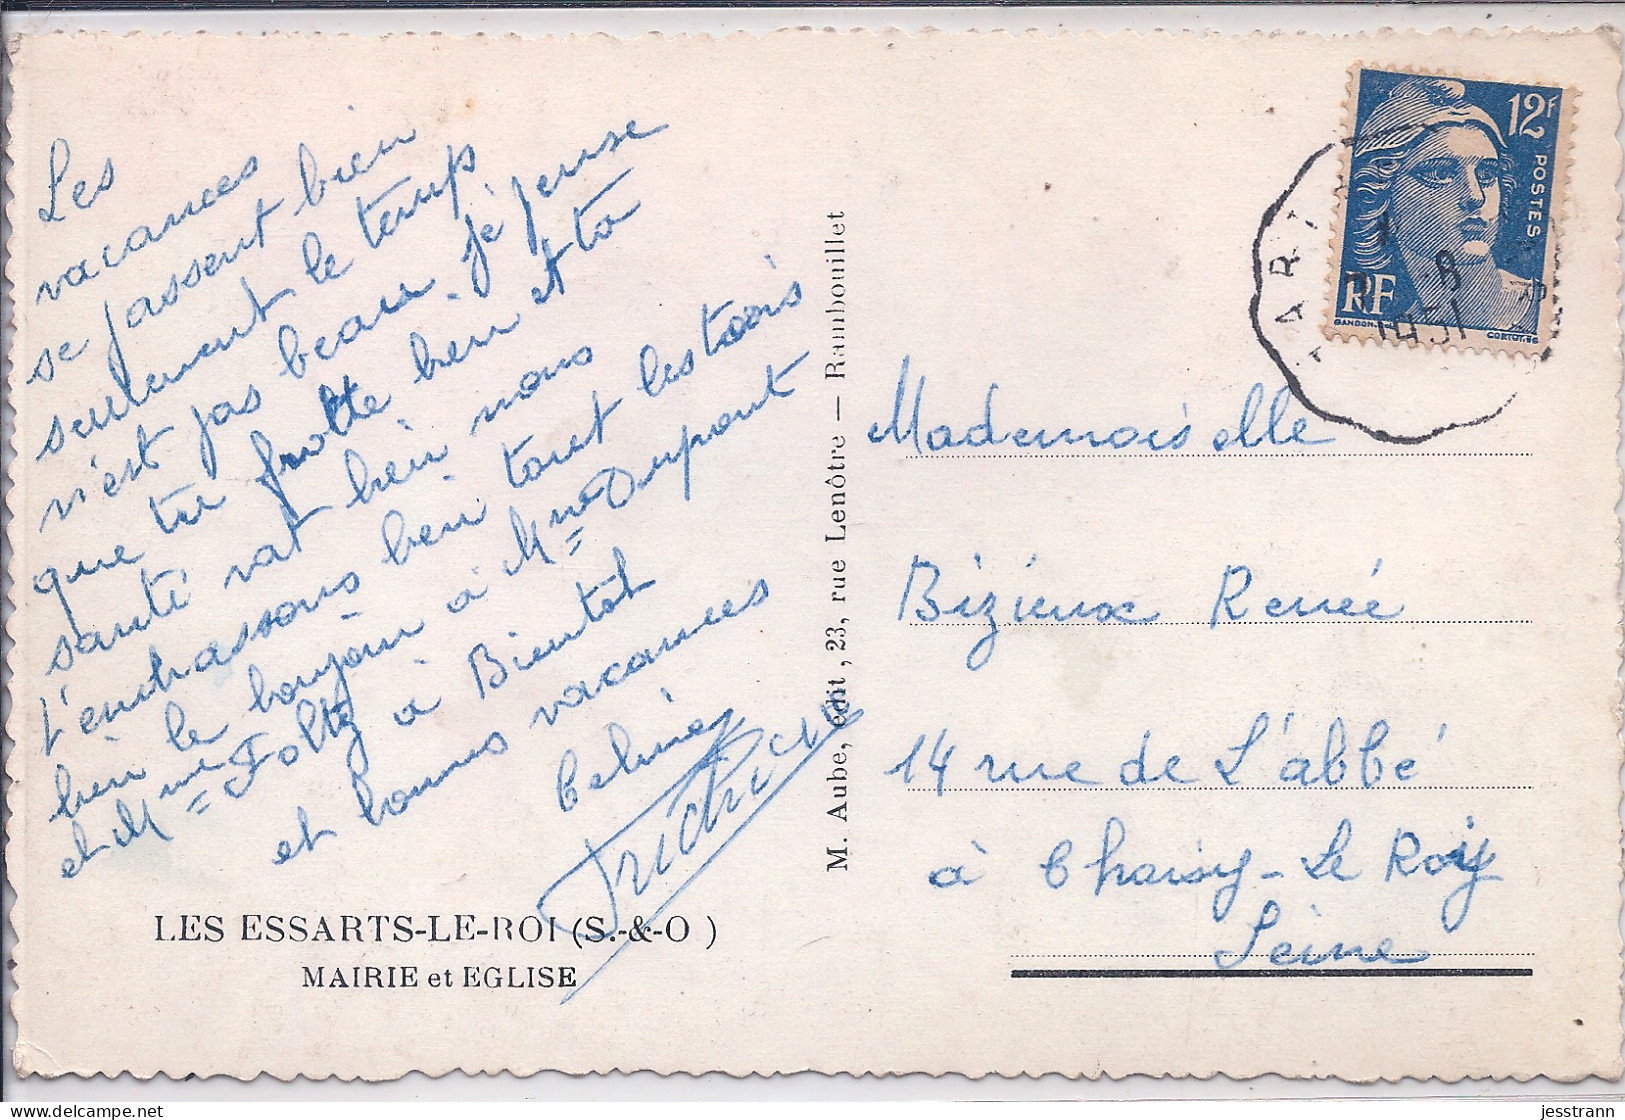 LES ESSARTS-LE-ROI- MAIRIE ET EGLISE- BELLE 2 CV CITROEN- 1951 - Les Essarts Le Roi